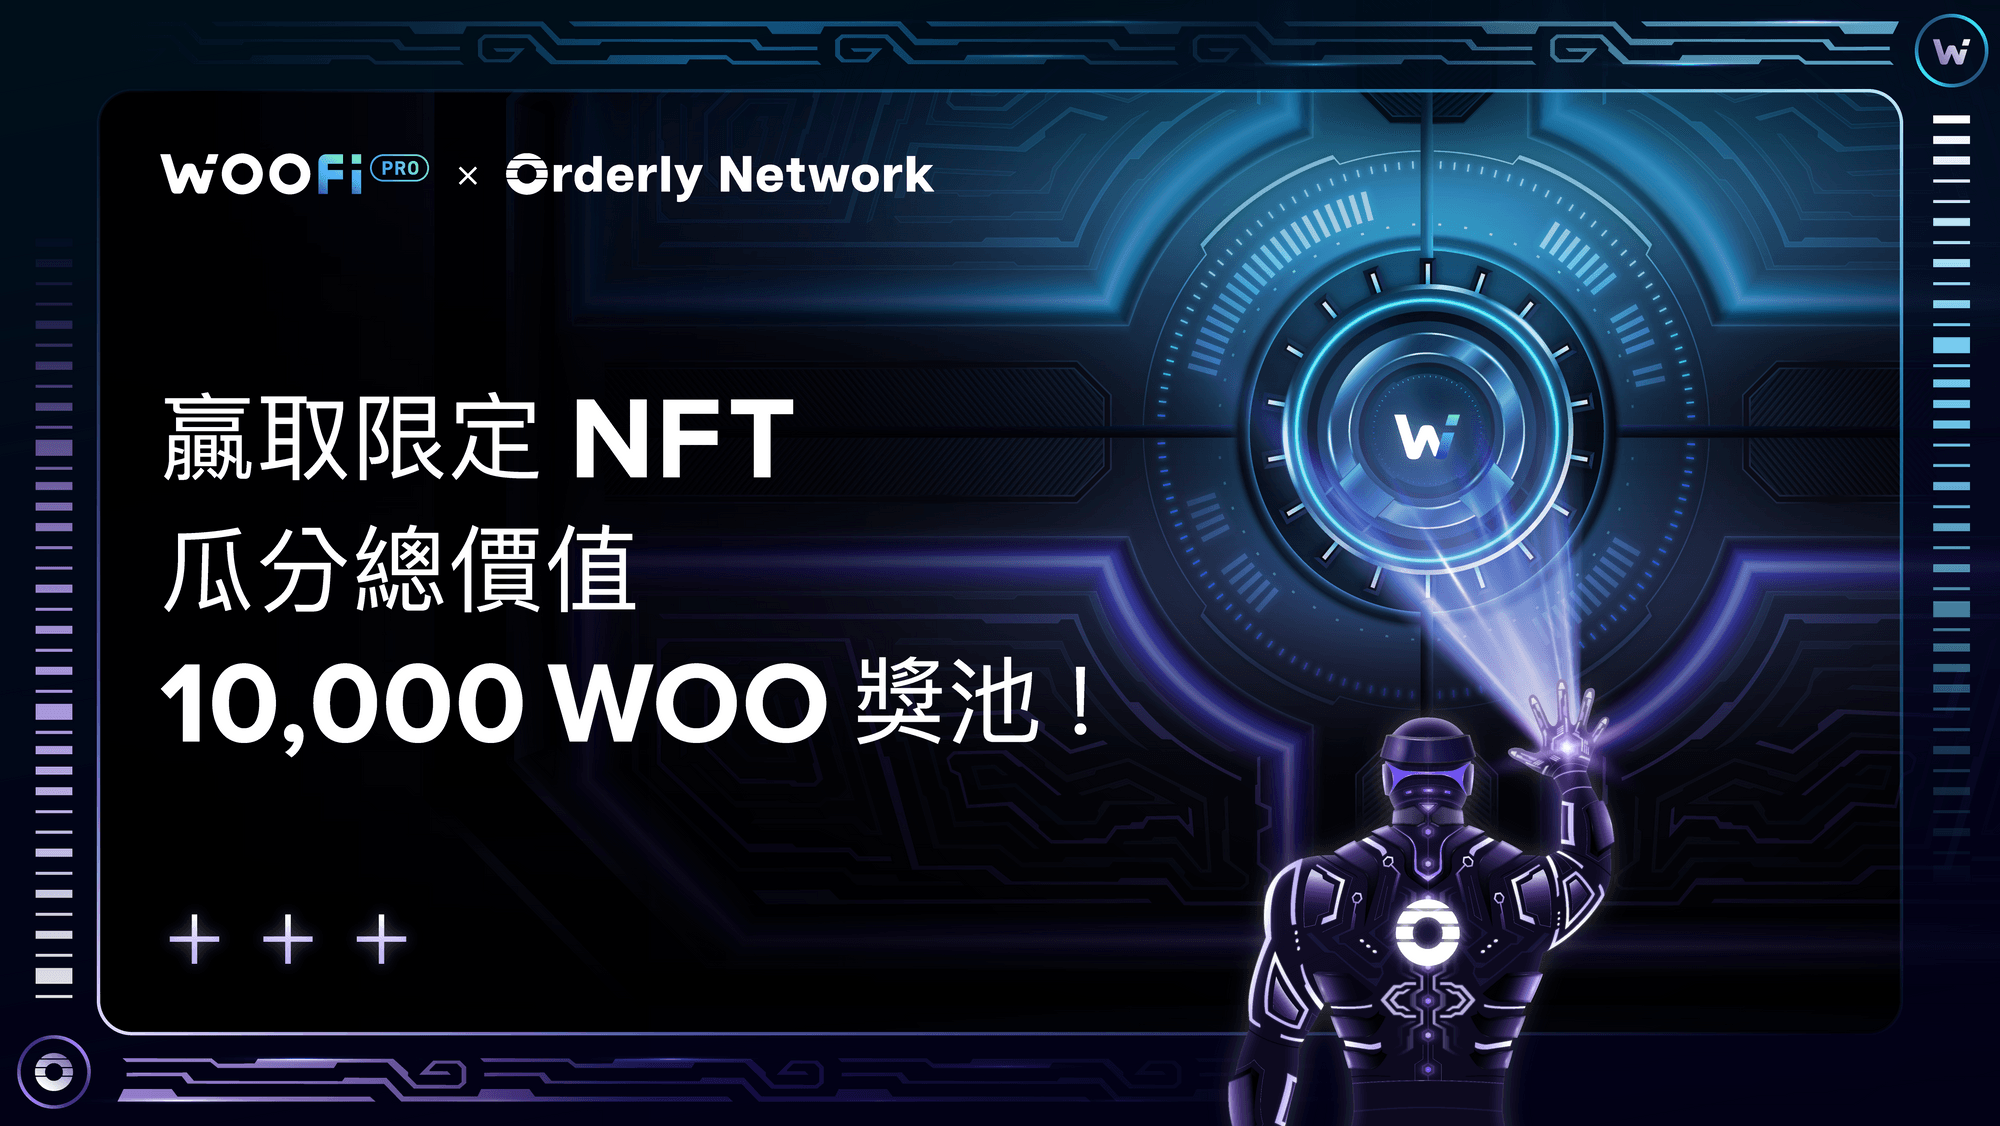 首個 WOOFi x Orderly NFT 上線